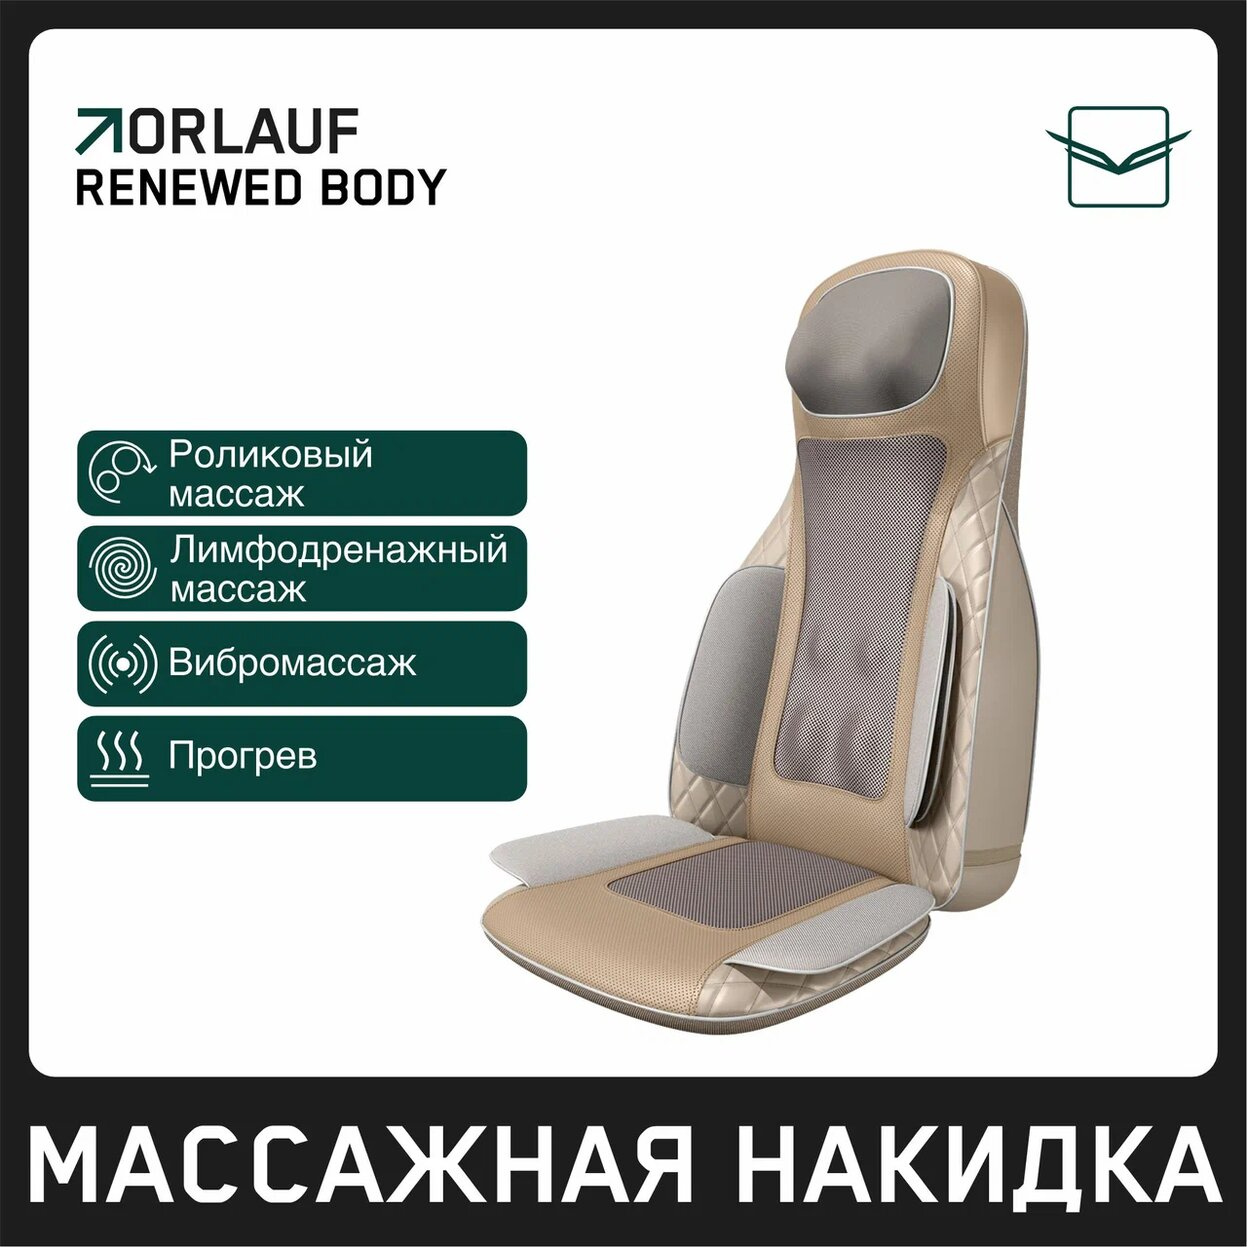 Renewed Body в Волгограде по цене 39900 ₽ в категории массажные накидки Orlauf